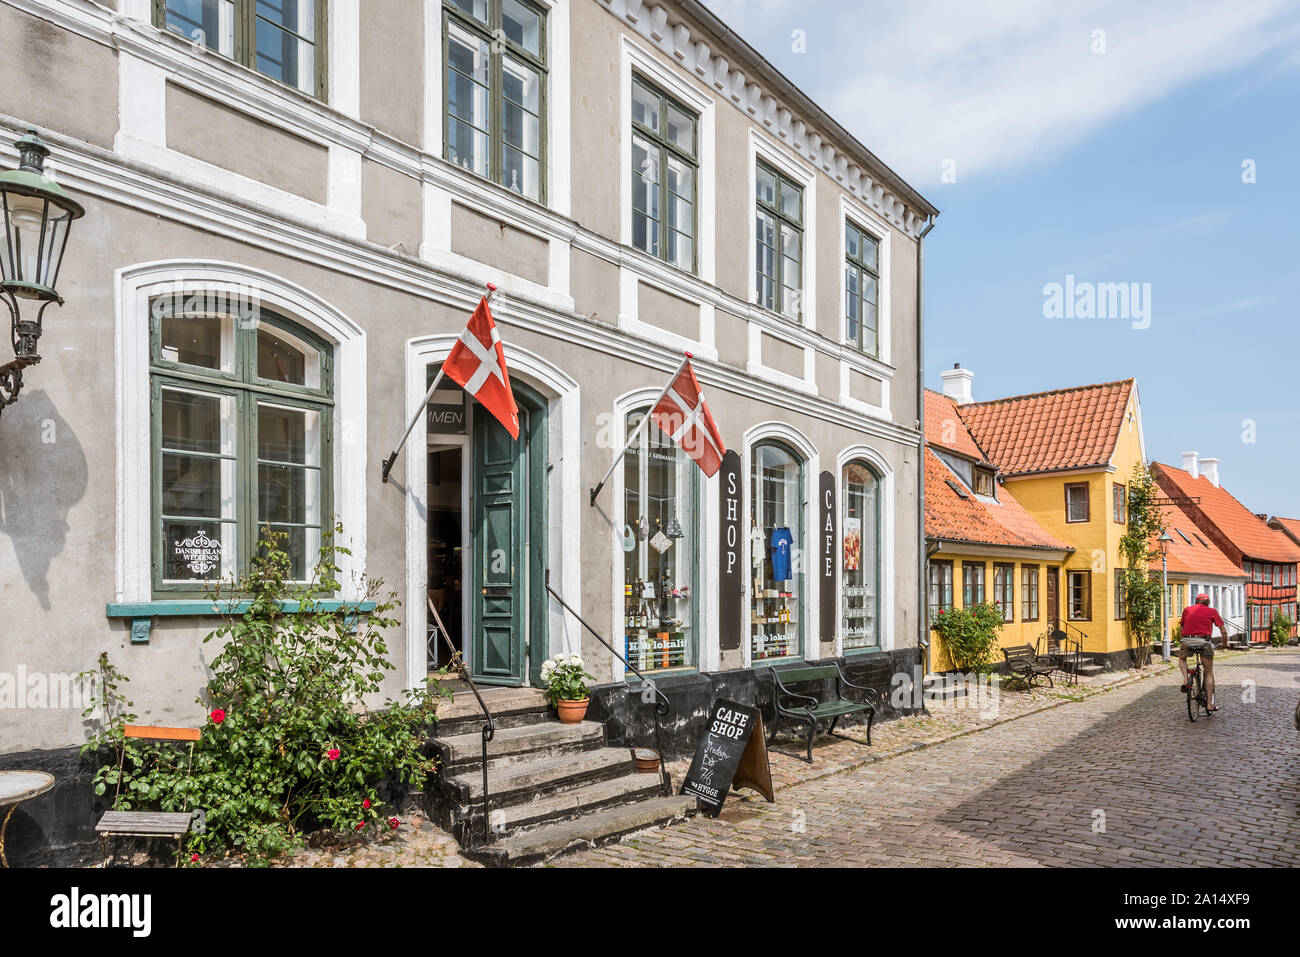 Un vecchio negozio di retrò con bandiere danese nella piazza di Aeroskobing, Danimarca, luglio 13, 2019 Foto Stock